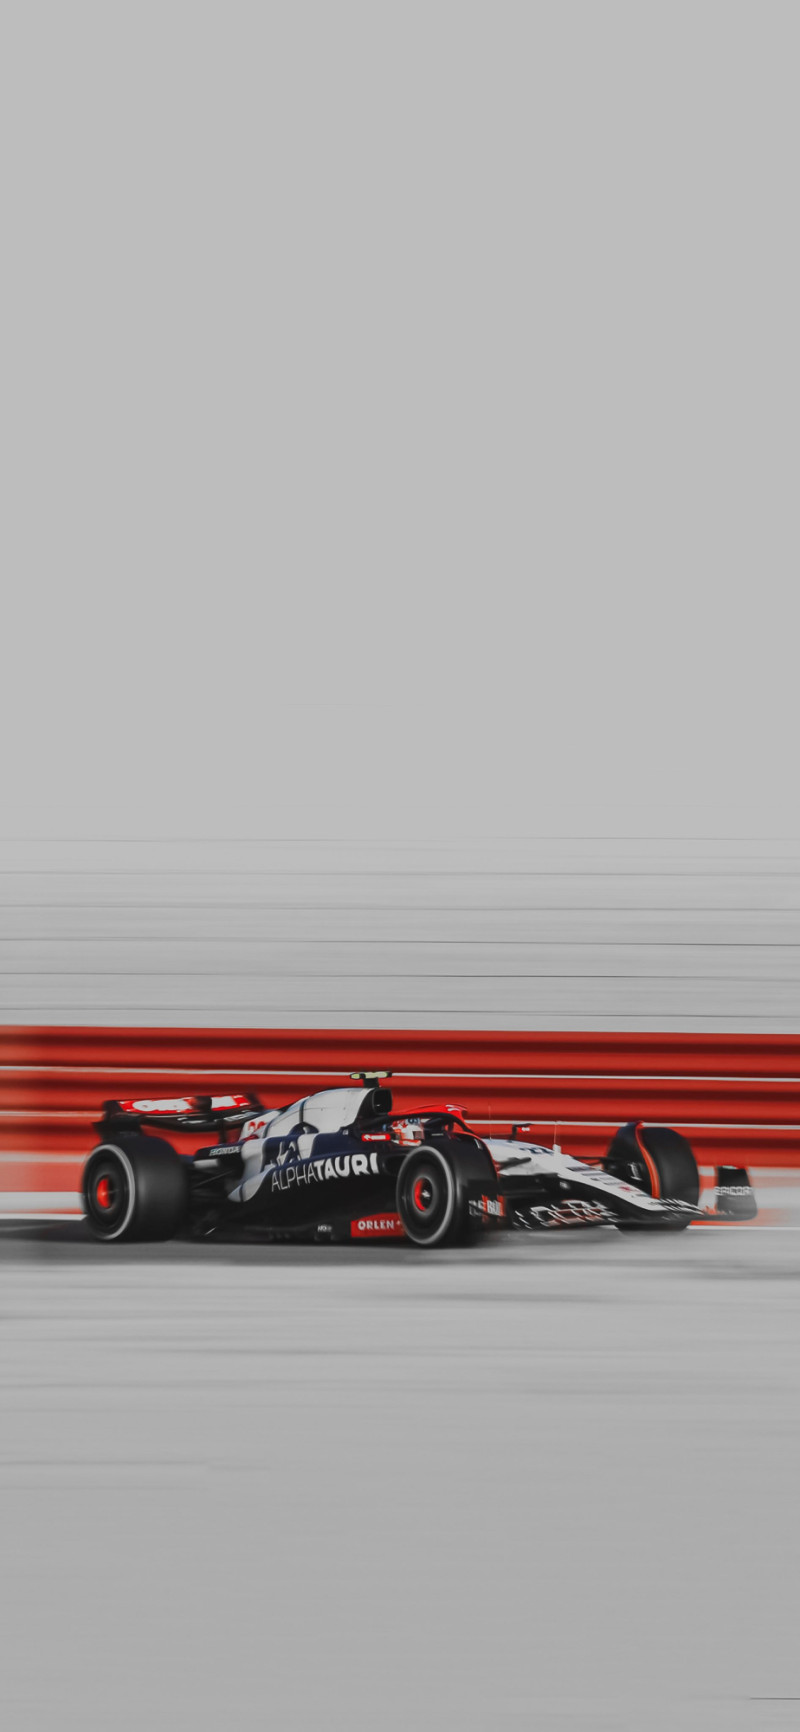 El piloto japonés Yuki Tsunoda del equipo AlphaTauri durante una práctica de la Fórmula Uno en el circuito de Sakhir, Bahréin, el viernes 24 de febrero de 2023.